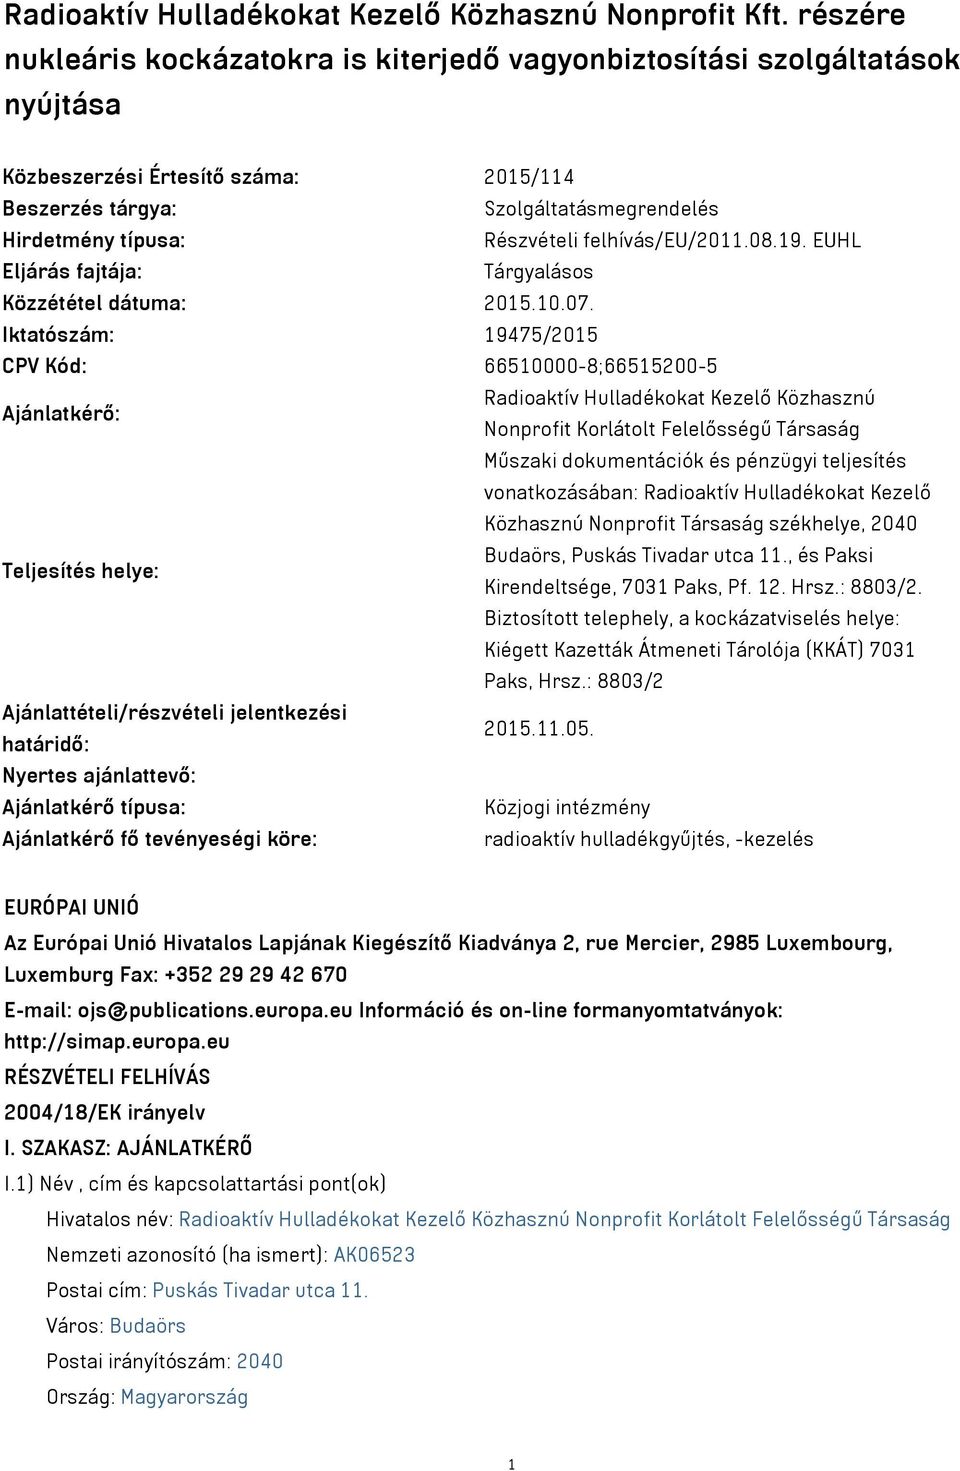 felhívás/eu/2011.08.19. EUHL Eljárás fajtája: Tárgyalásos Közzététel dátuma: 2015.10.07.